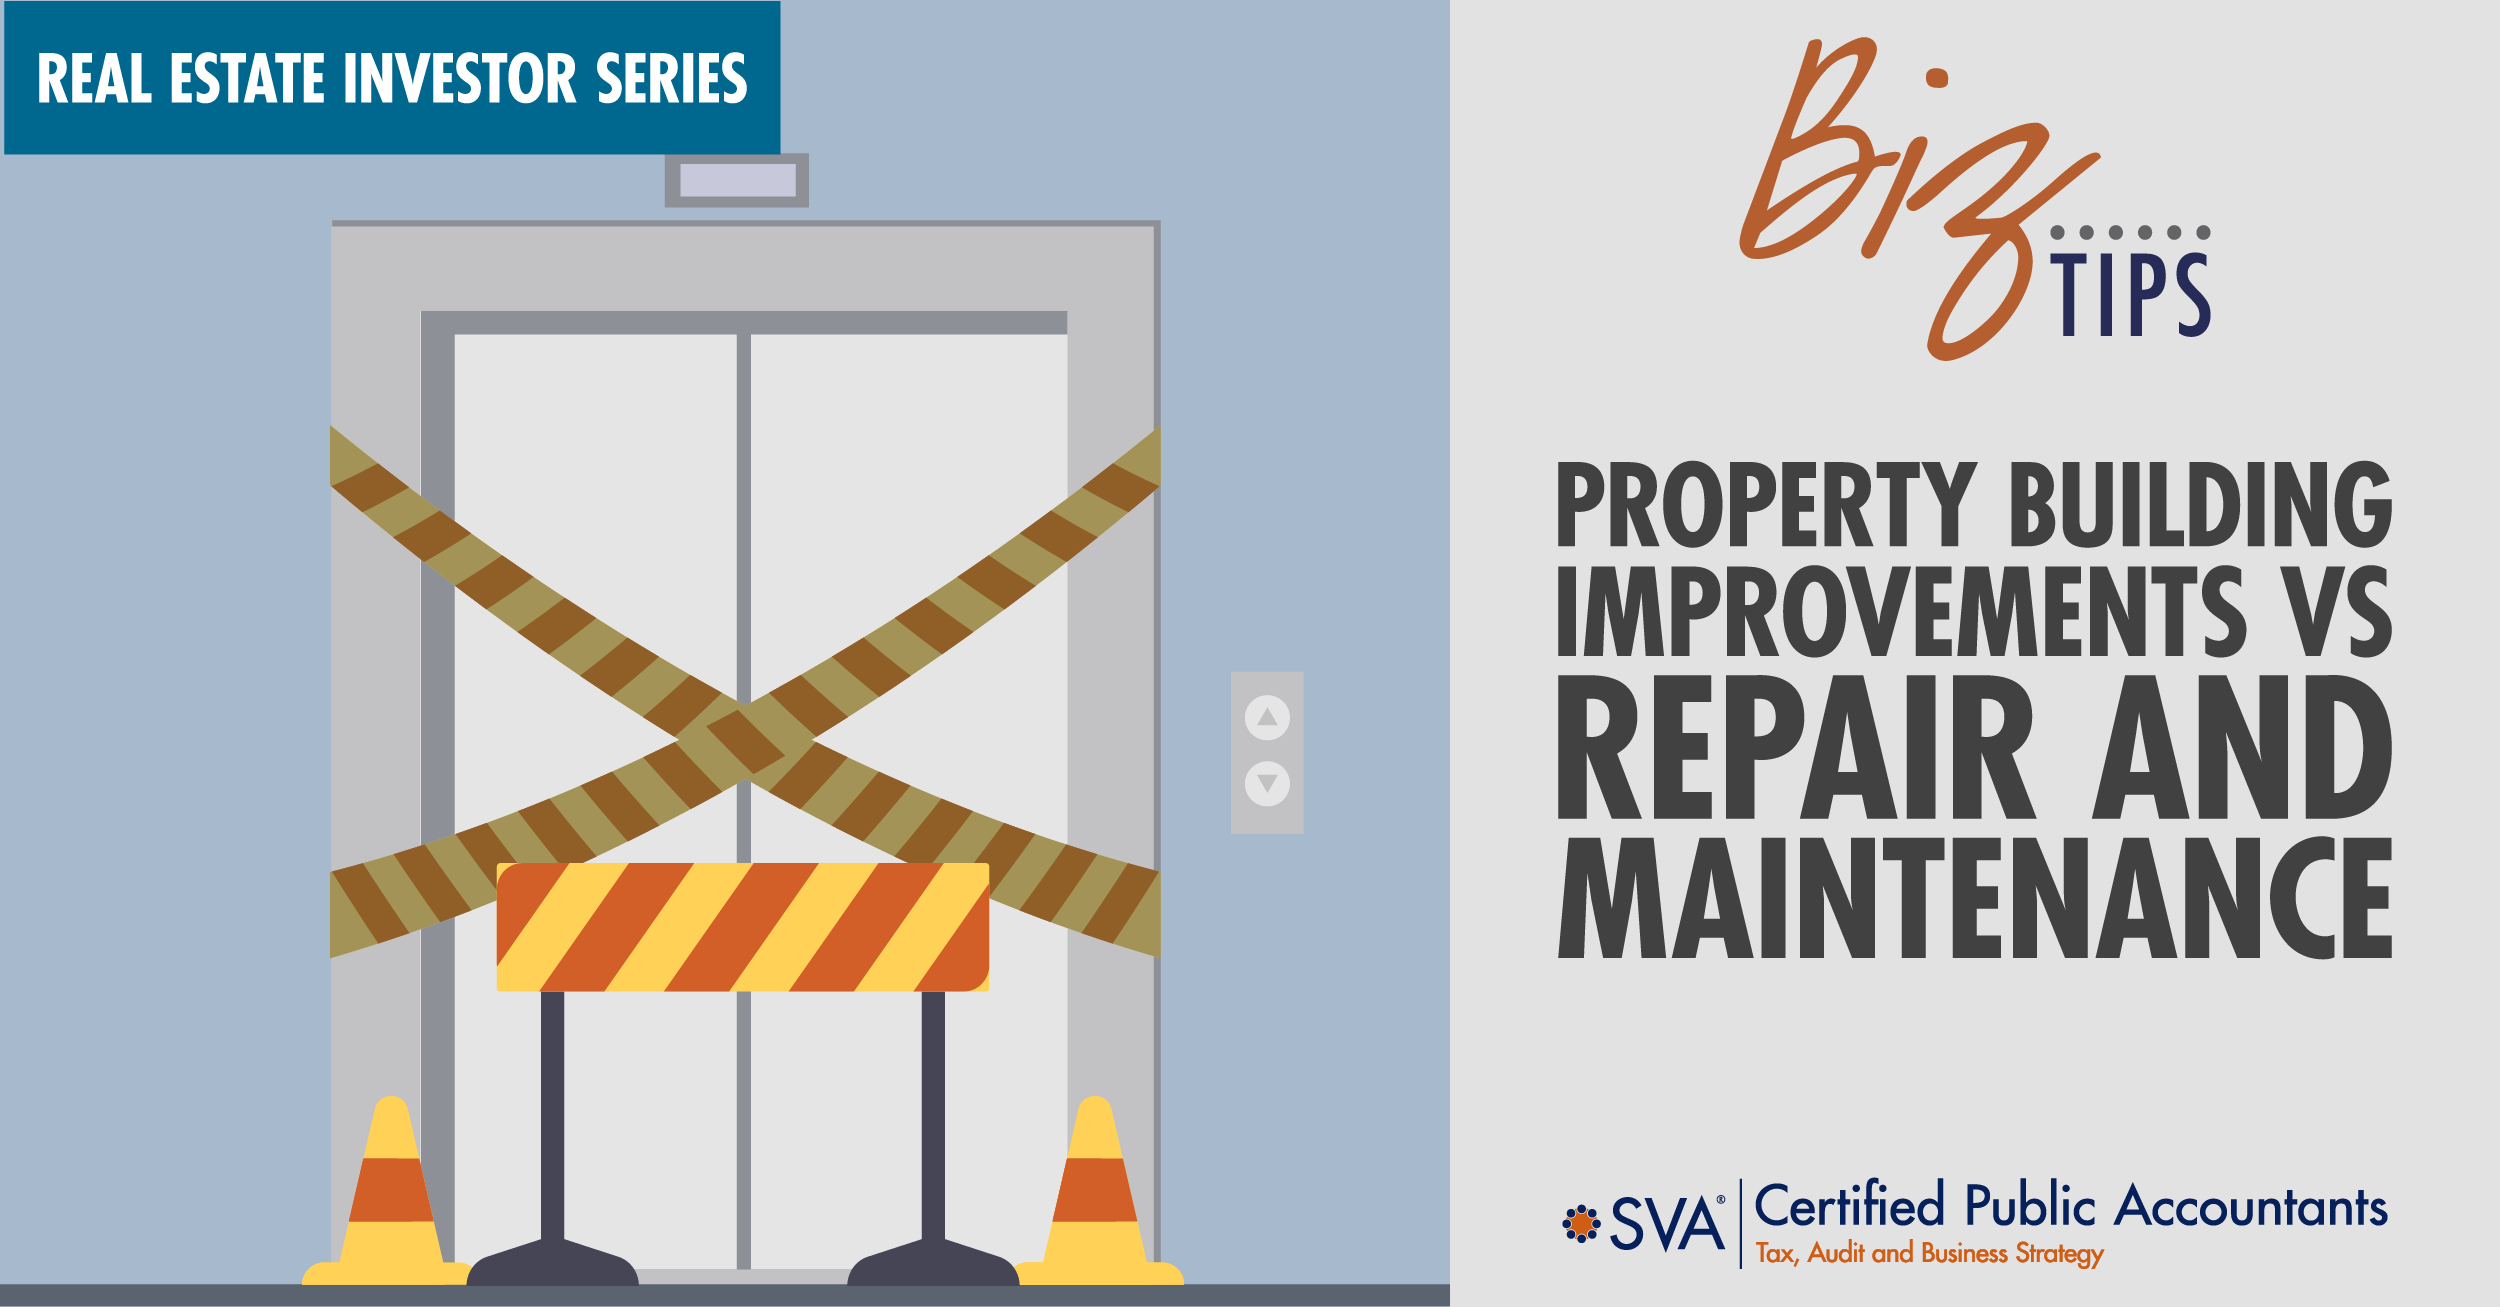 Real Estate Investor Series: Building Improvements vs Repair and Maintenance